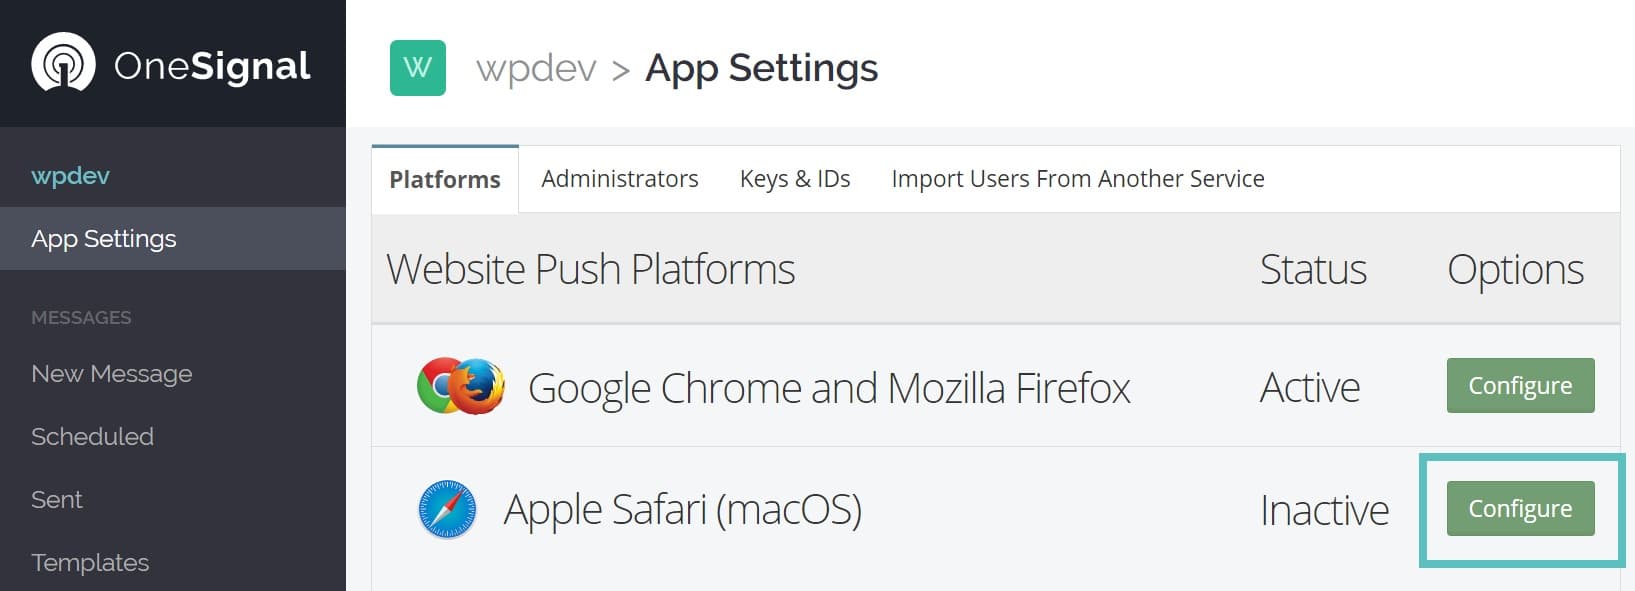 Configuração das notificações push no Apple Safari